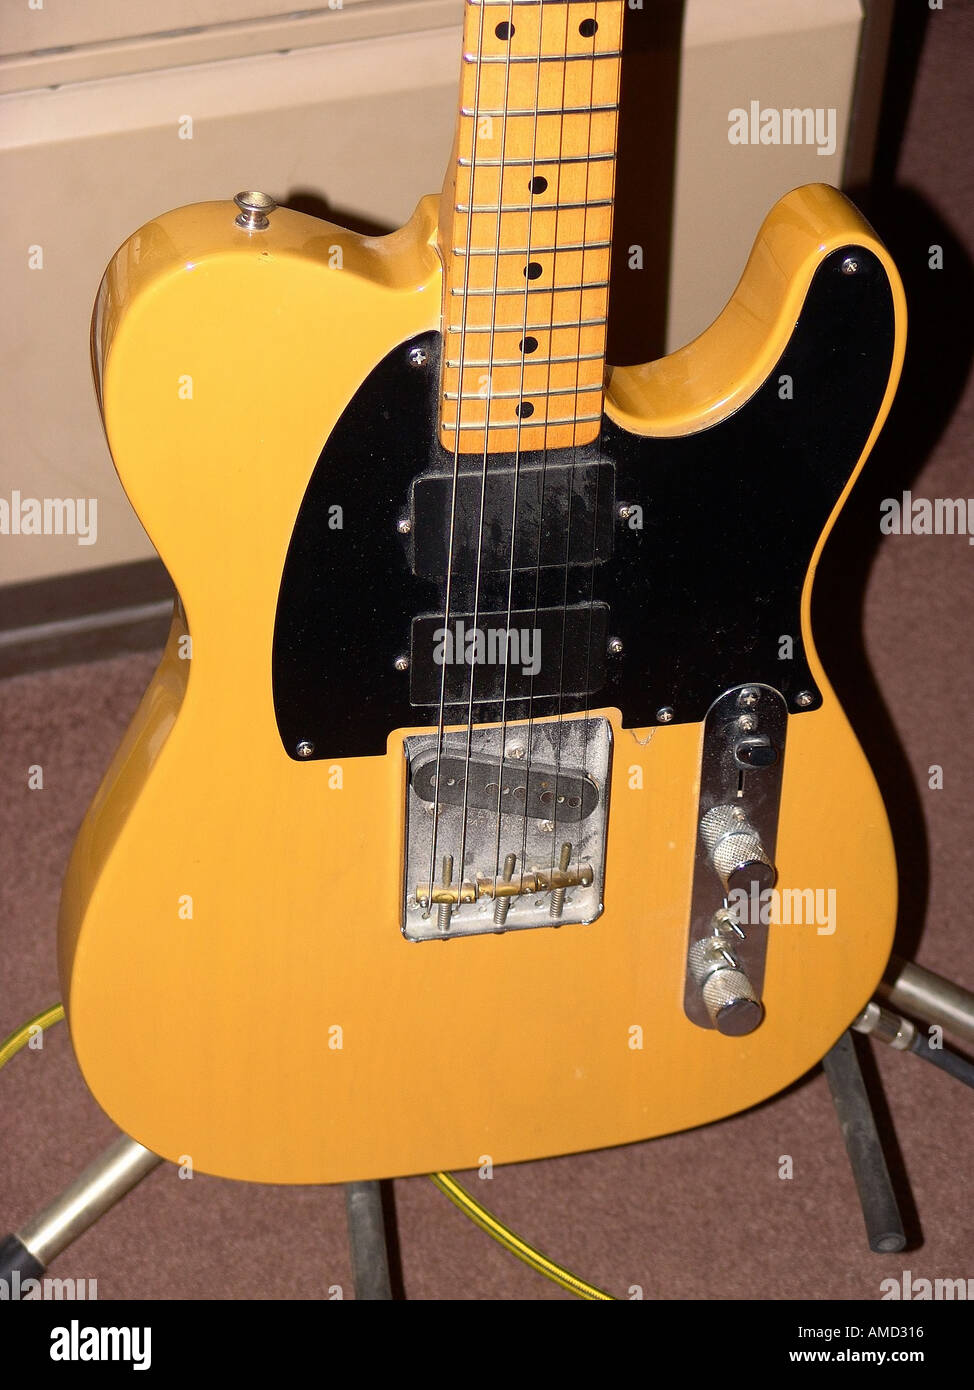 Musique guitare électrique Fender Telecaster blonde Banque D'Images